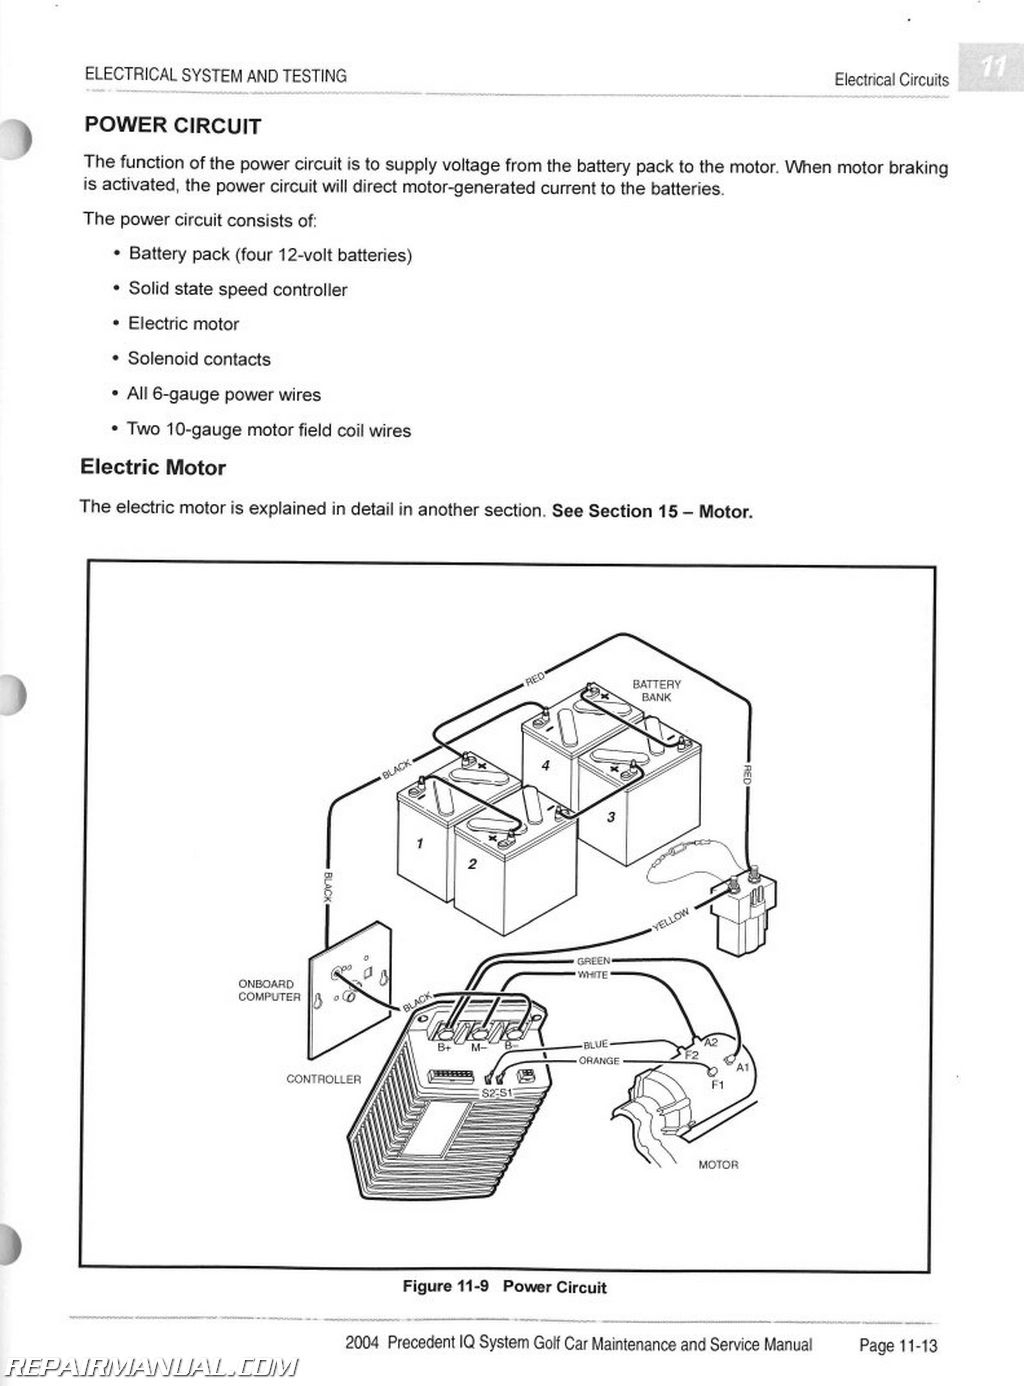 Club Car Precedent Golf Cart Wiring Diagram | Wiring Diagram - Club Car Wiring Diagram Gas